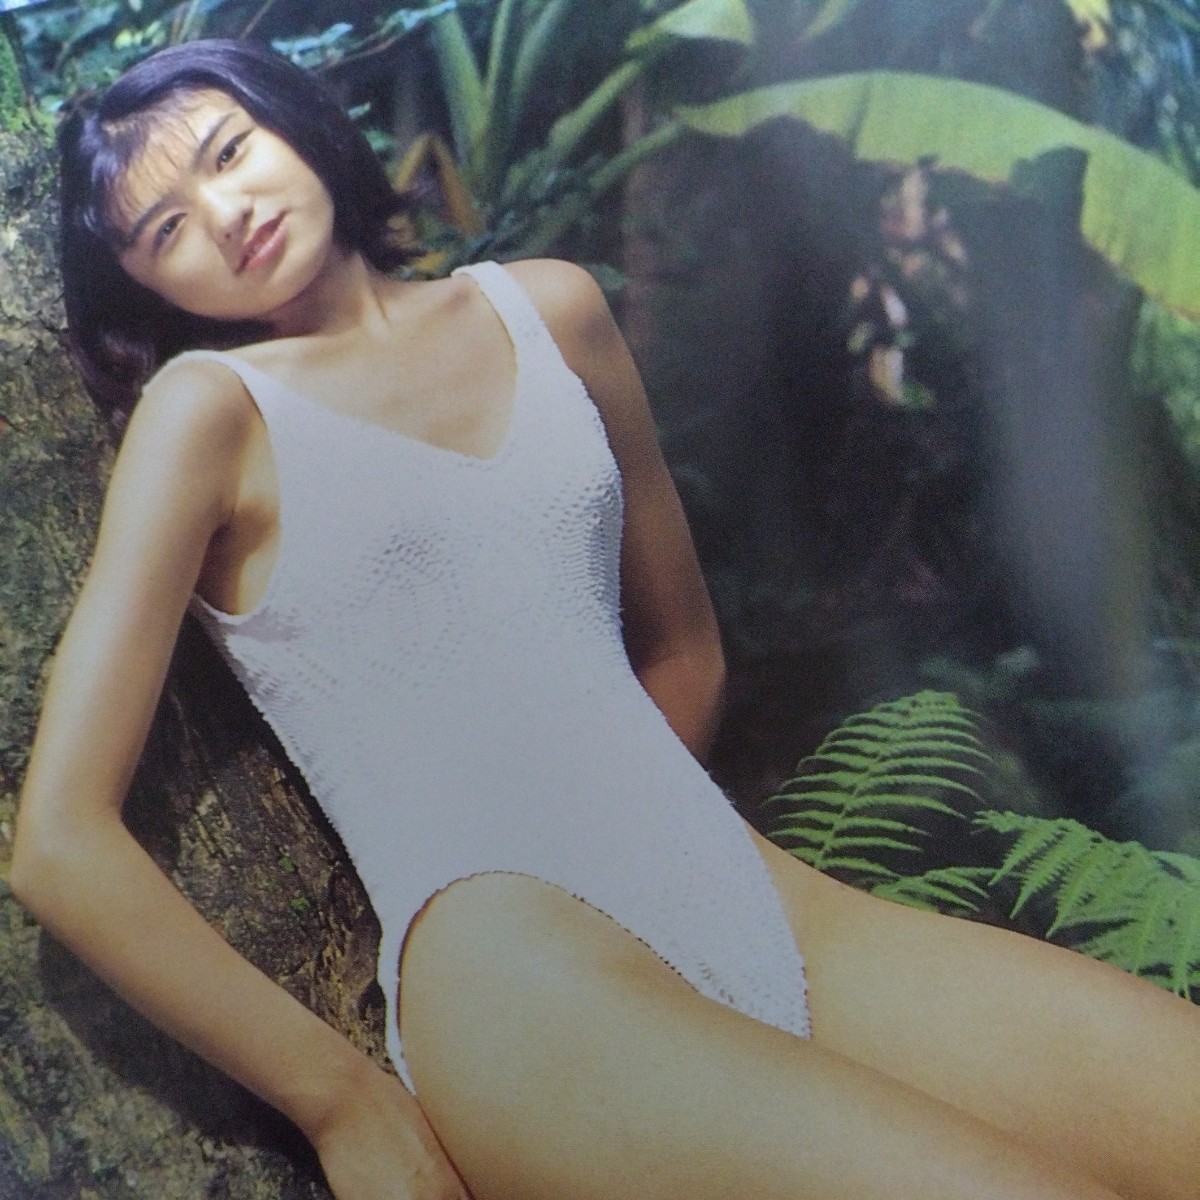 [13. memory!bruma* bikini ] river ... photoalbum [13 THIRTEEN] obi . attaching the first version 1995 year sale p1567-2